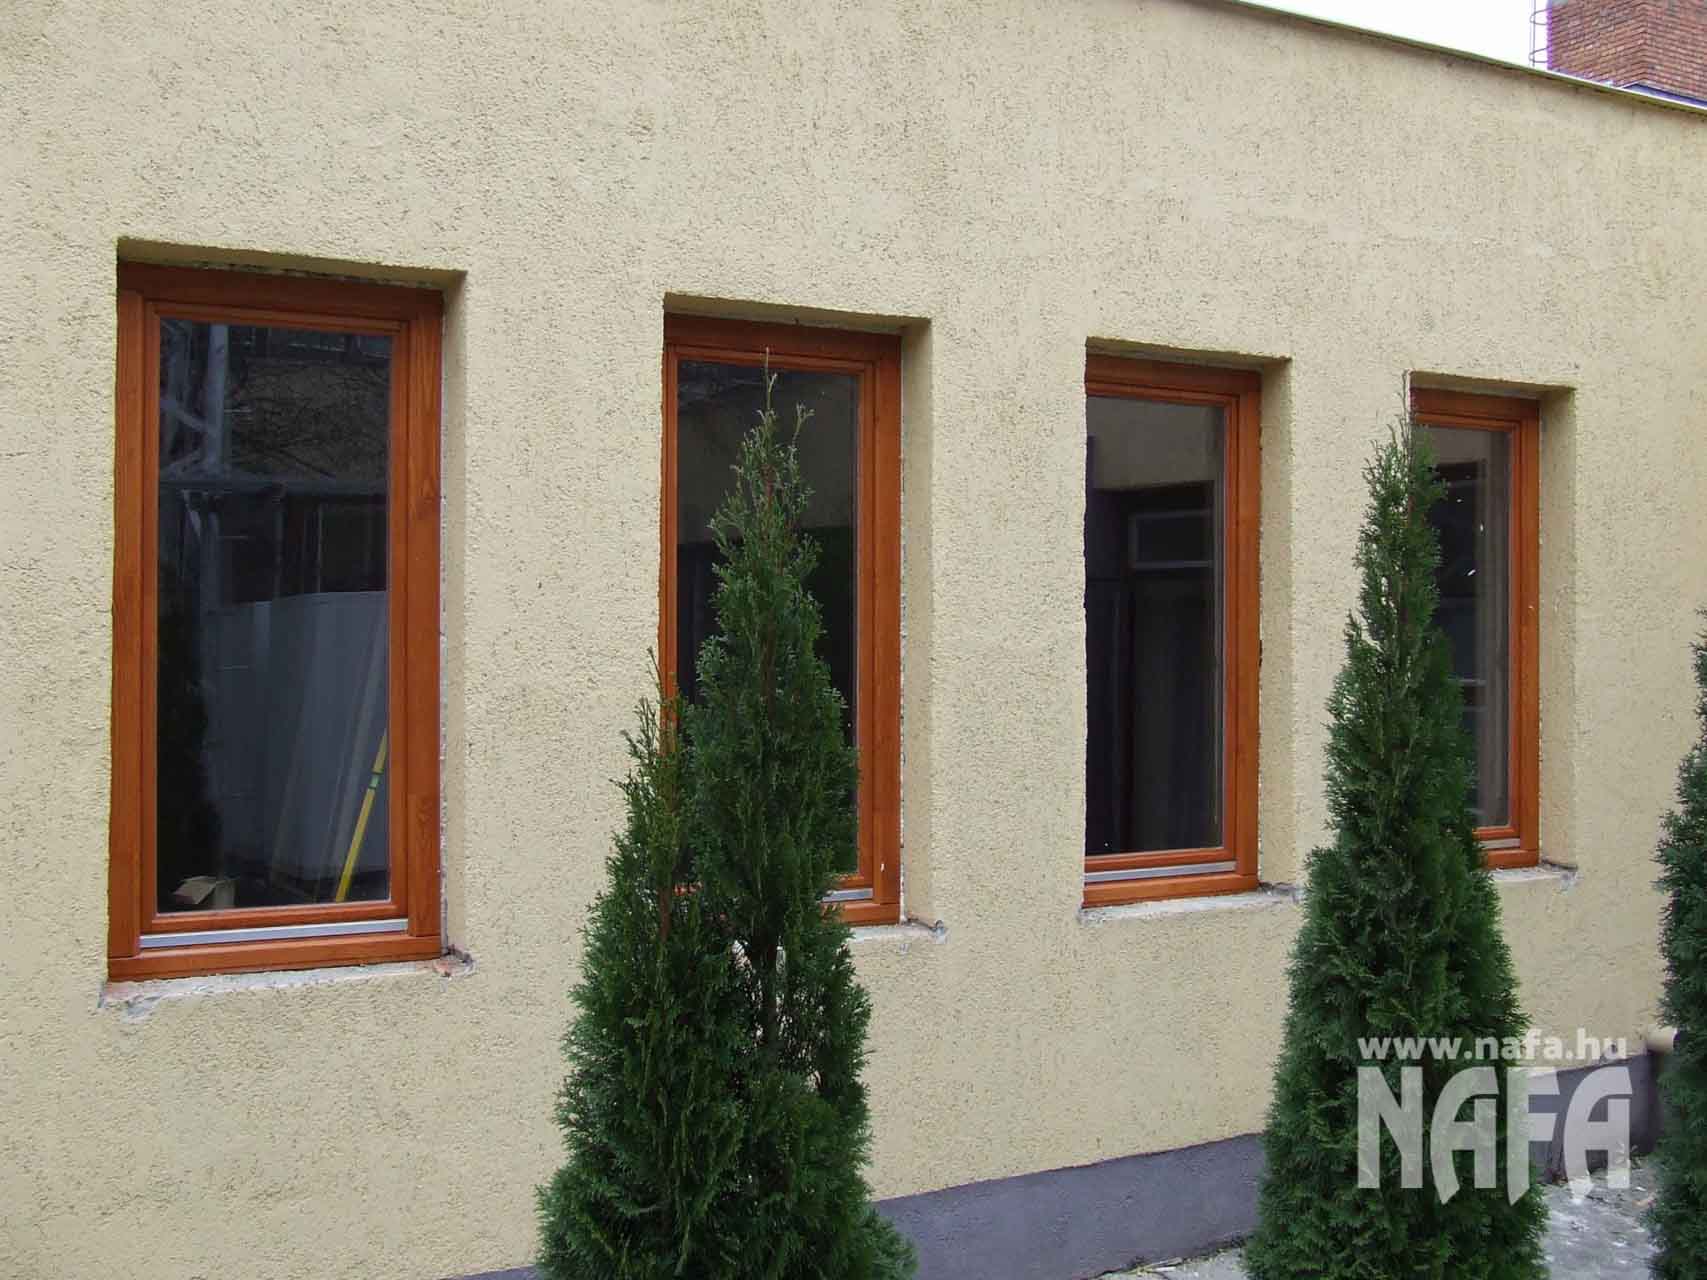 Fa nyílászárók, egyedi festett ablakok, Nagykanizsa Közintézmény